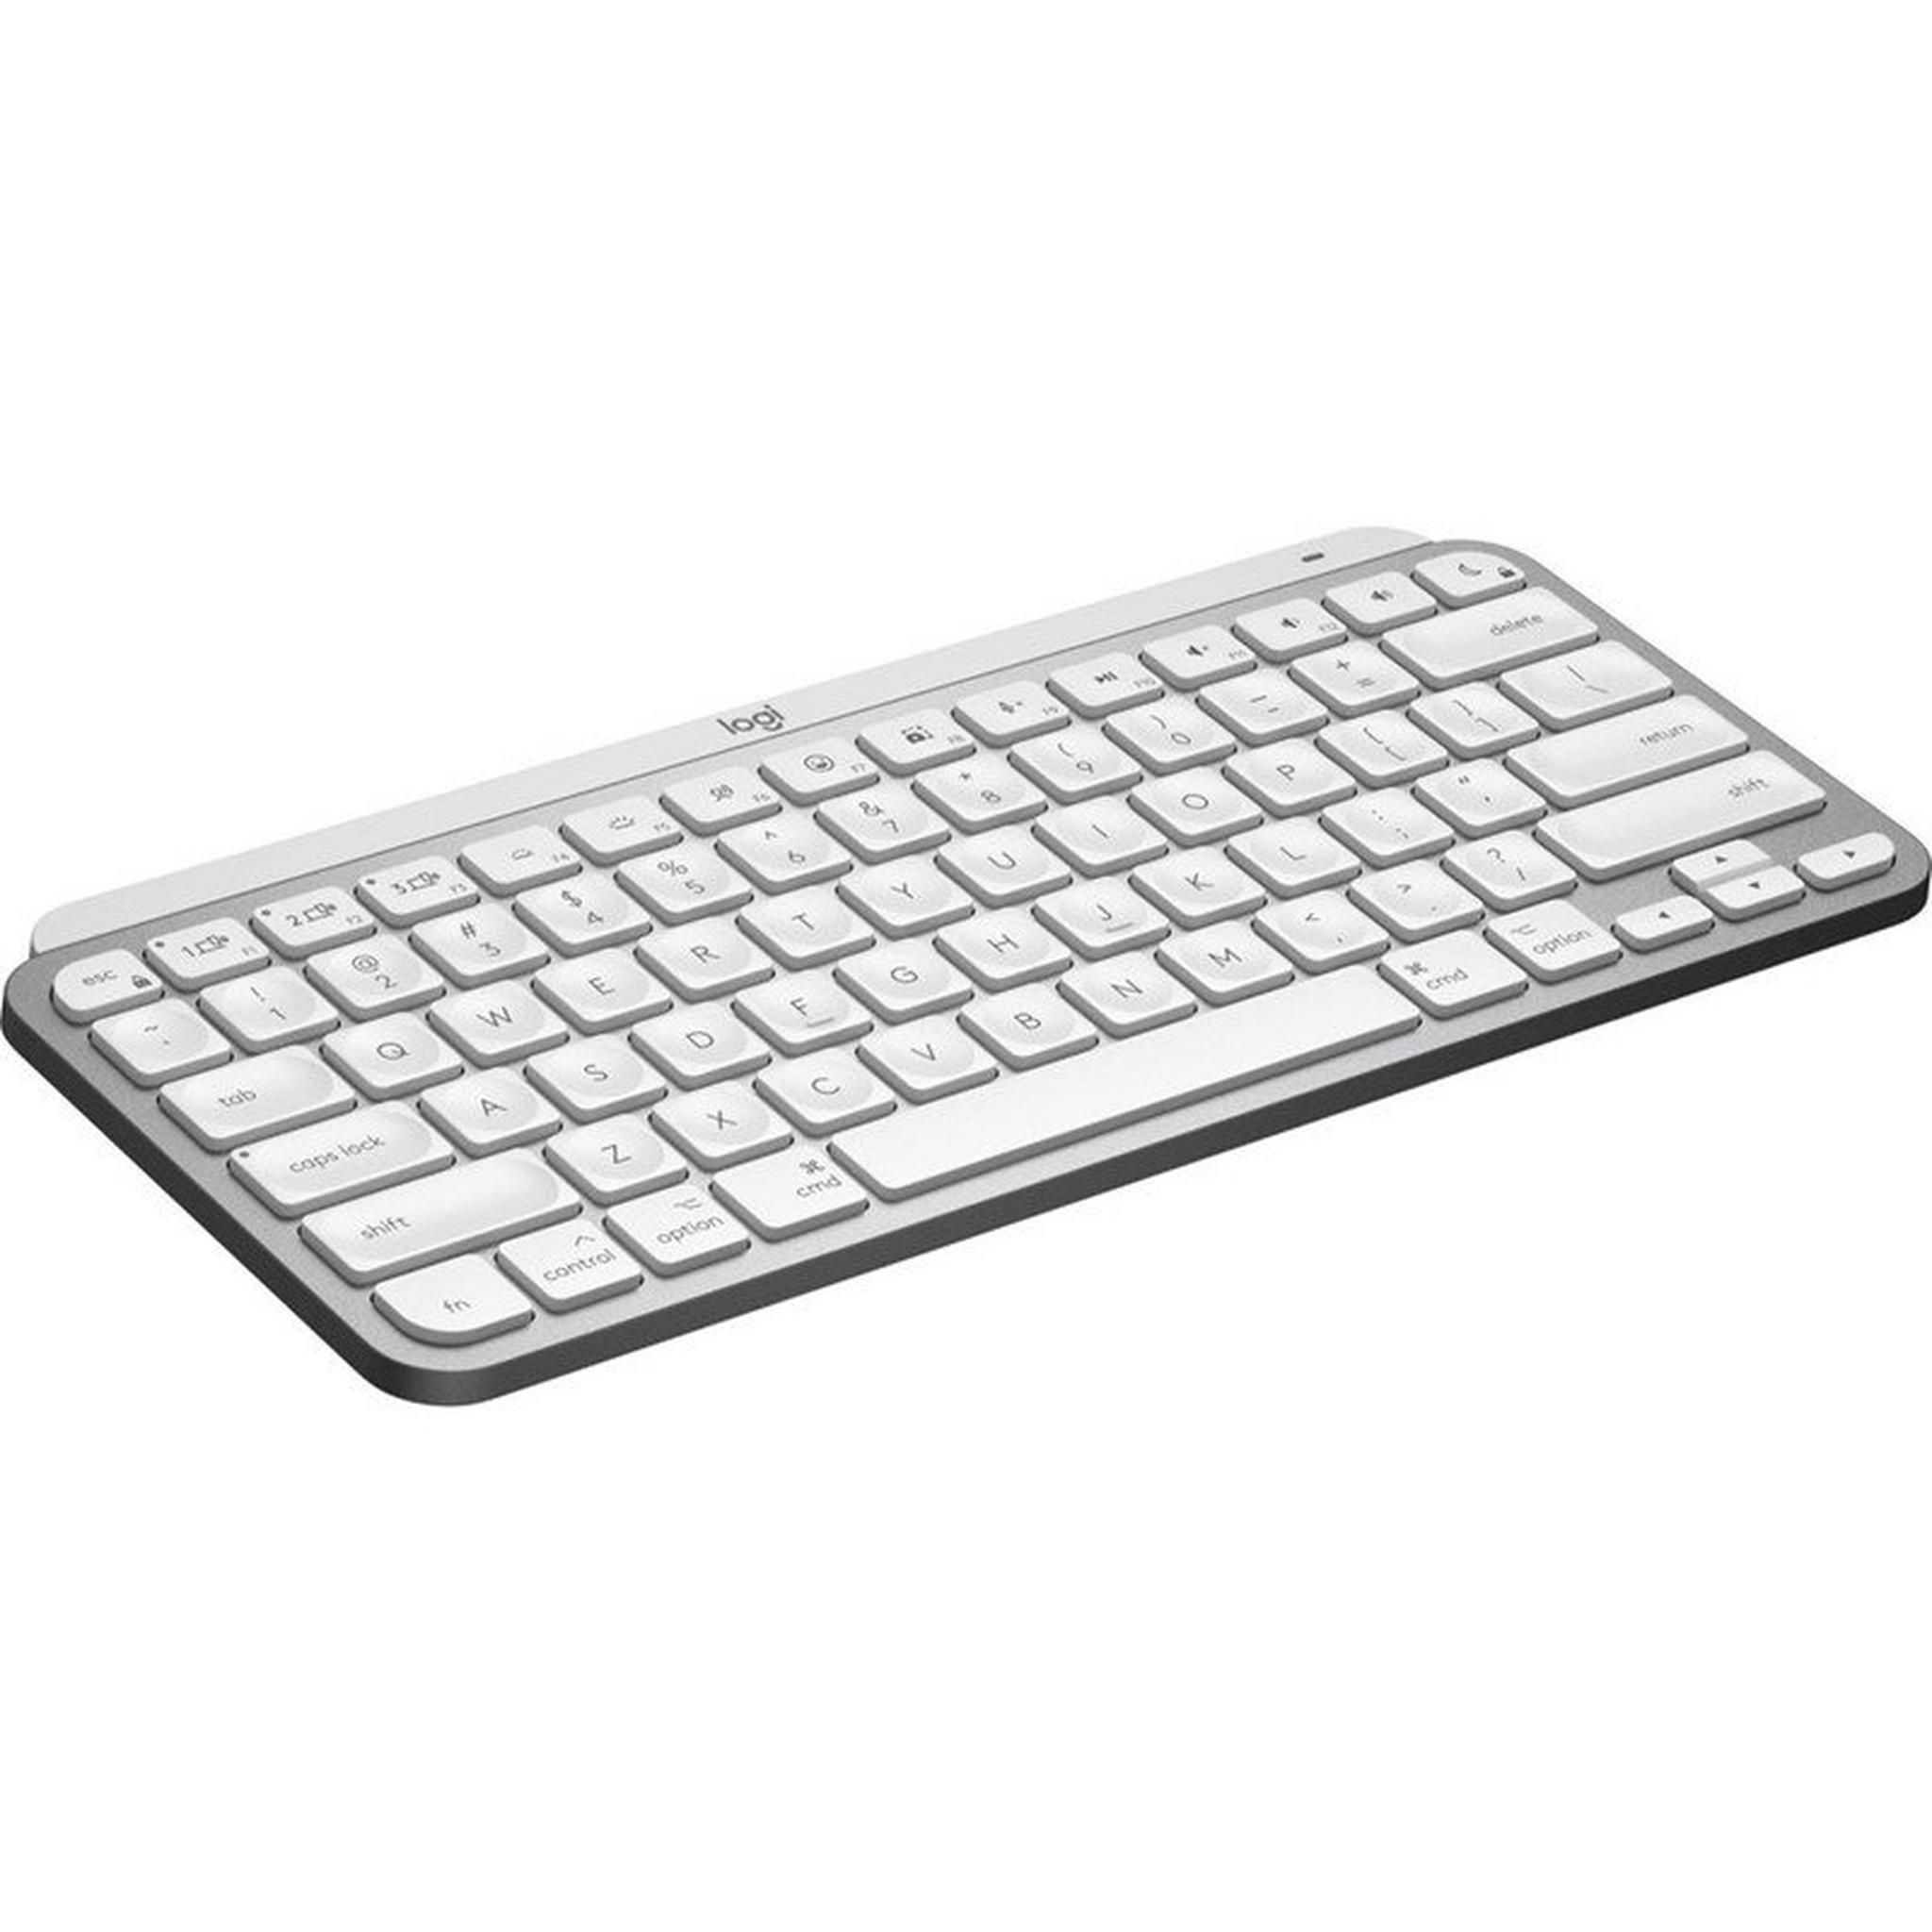 لوحة مفاتيح لوجيتك MX Keys Mini إنجليزية مضيئة لاسلكية لأجهزة Mac - فضي